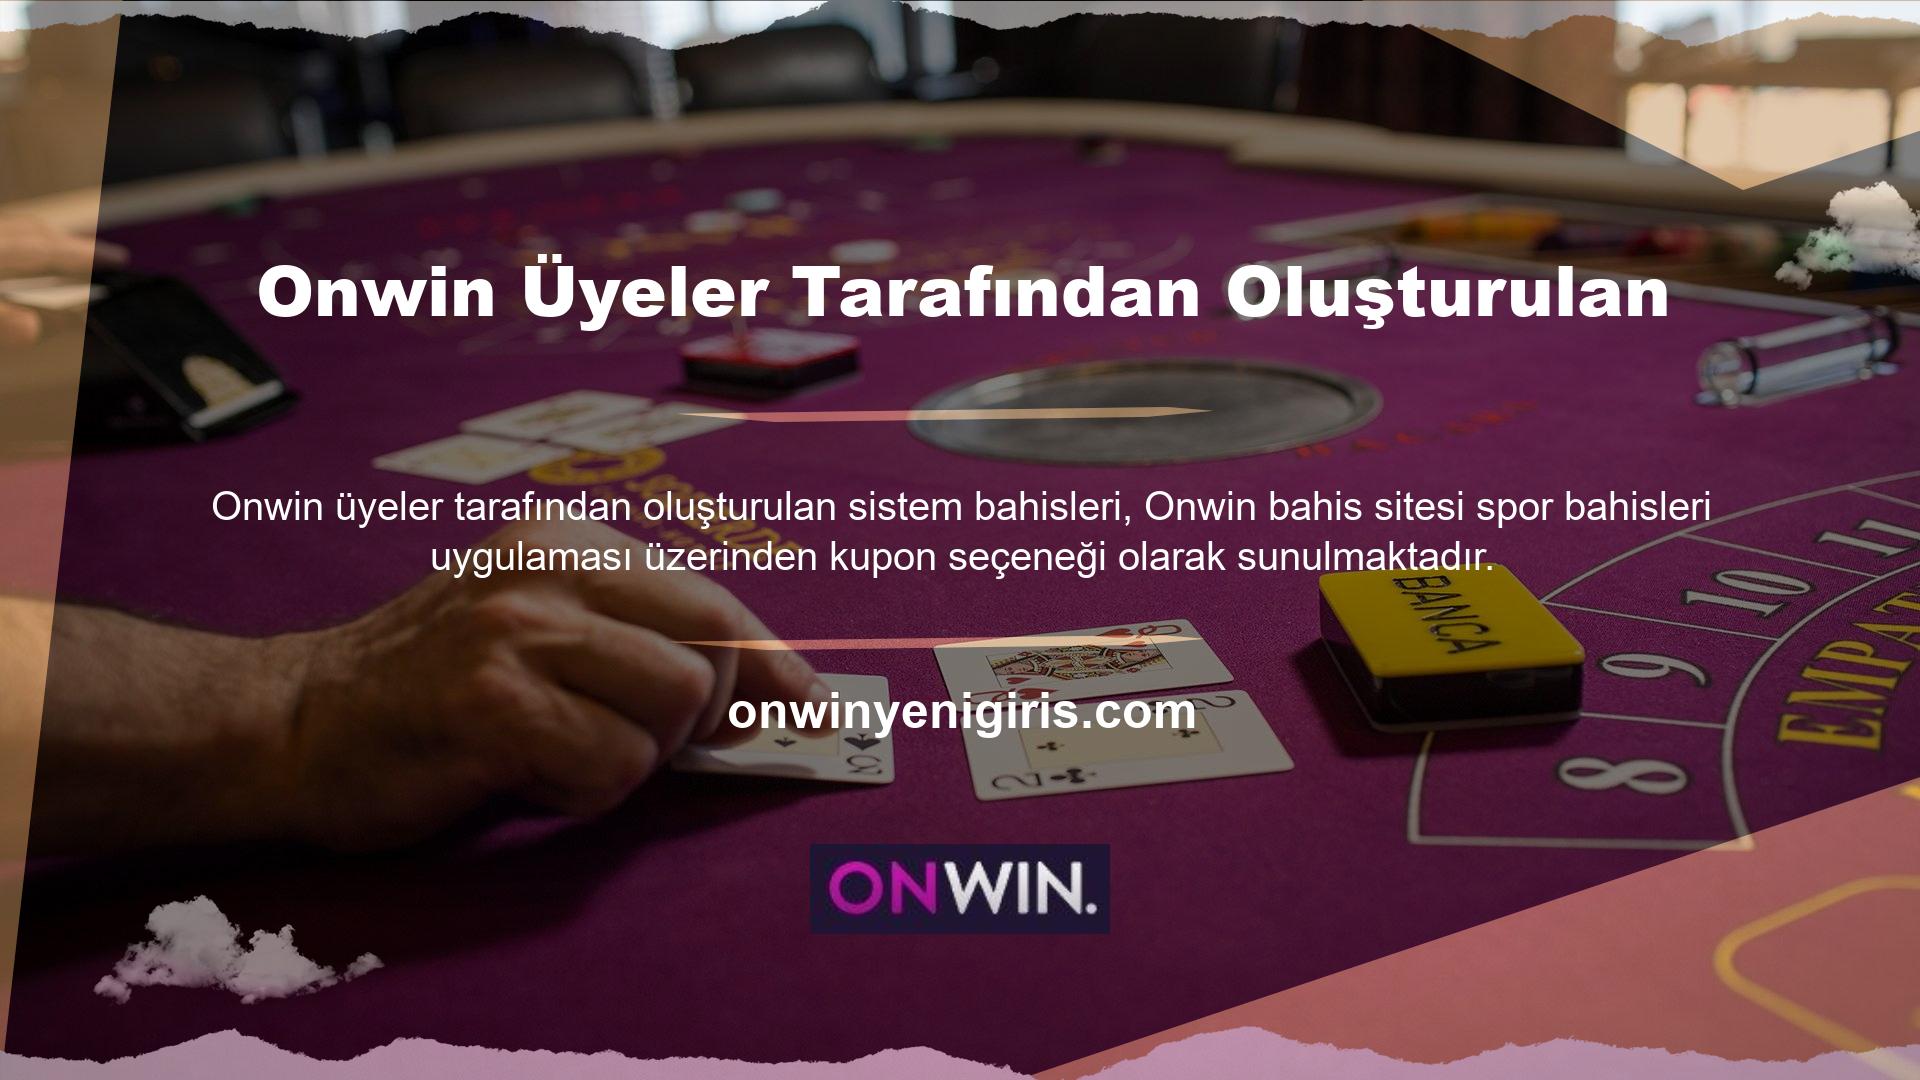 Onwin bahis sisteminde banko maçı tanımlamanız gerekmektedir